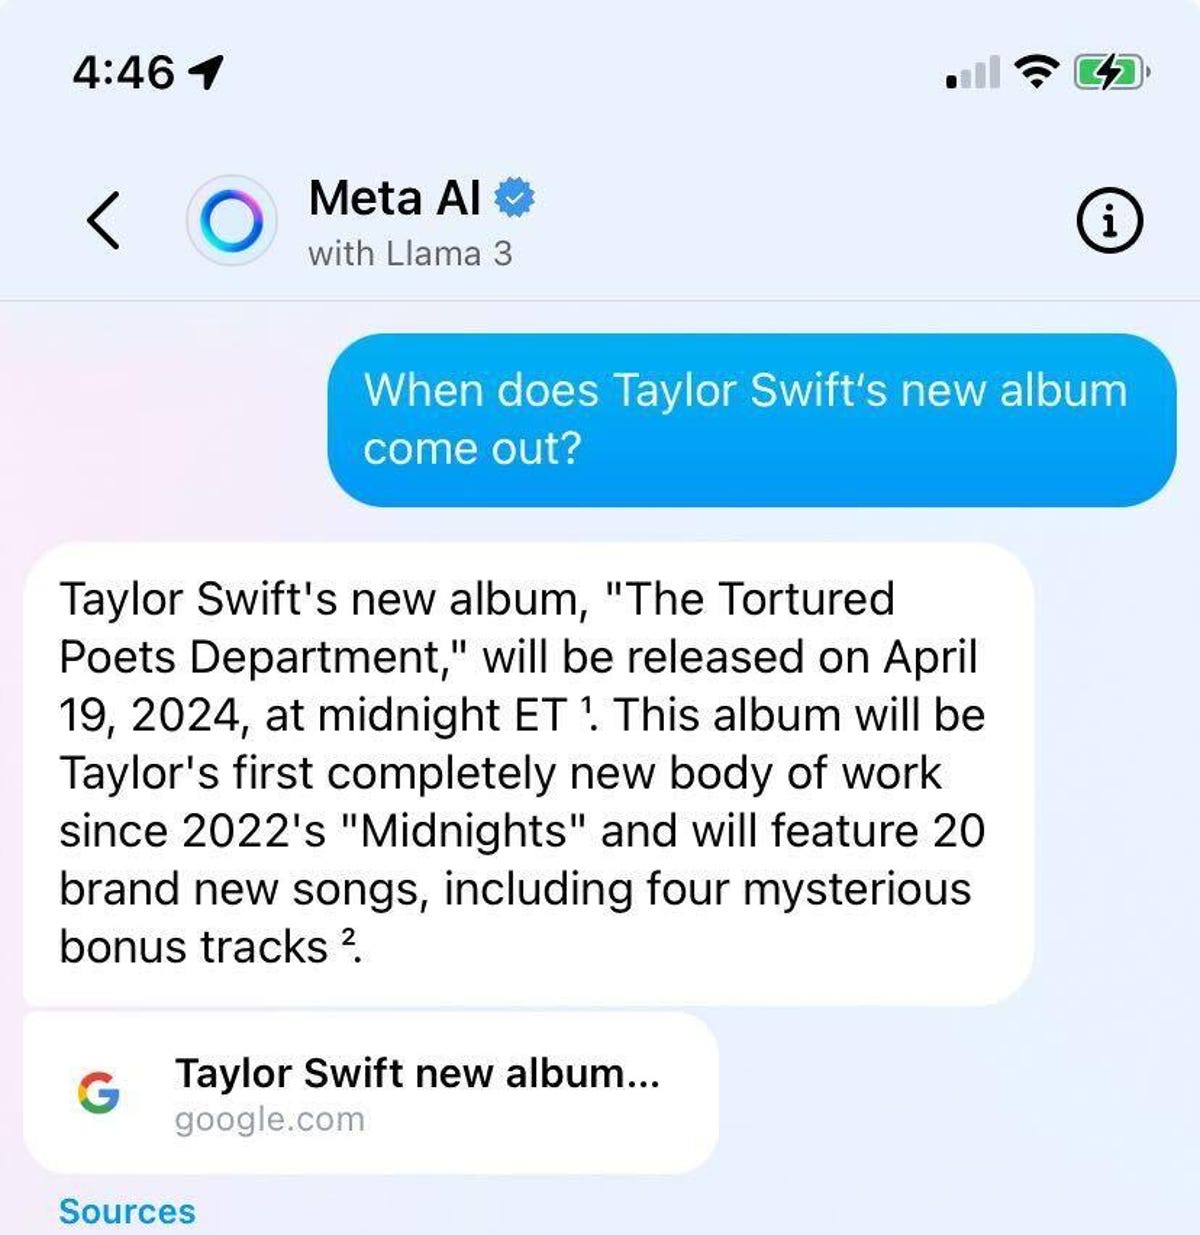 Captura de tela da Meta AI respondendo a uma pergunta sobre Taylor Swift